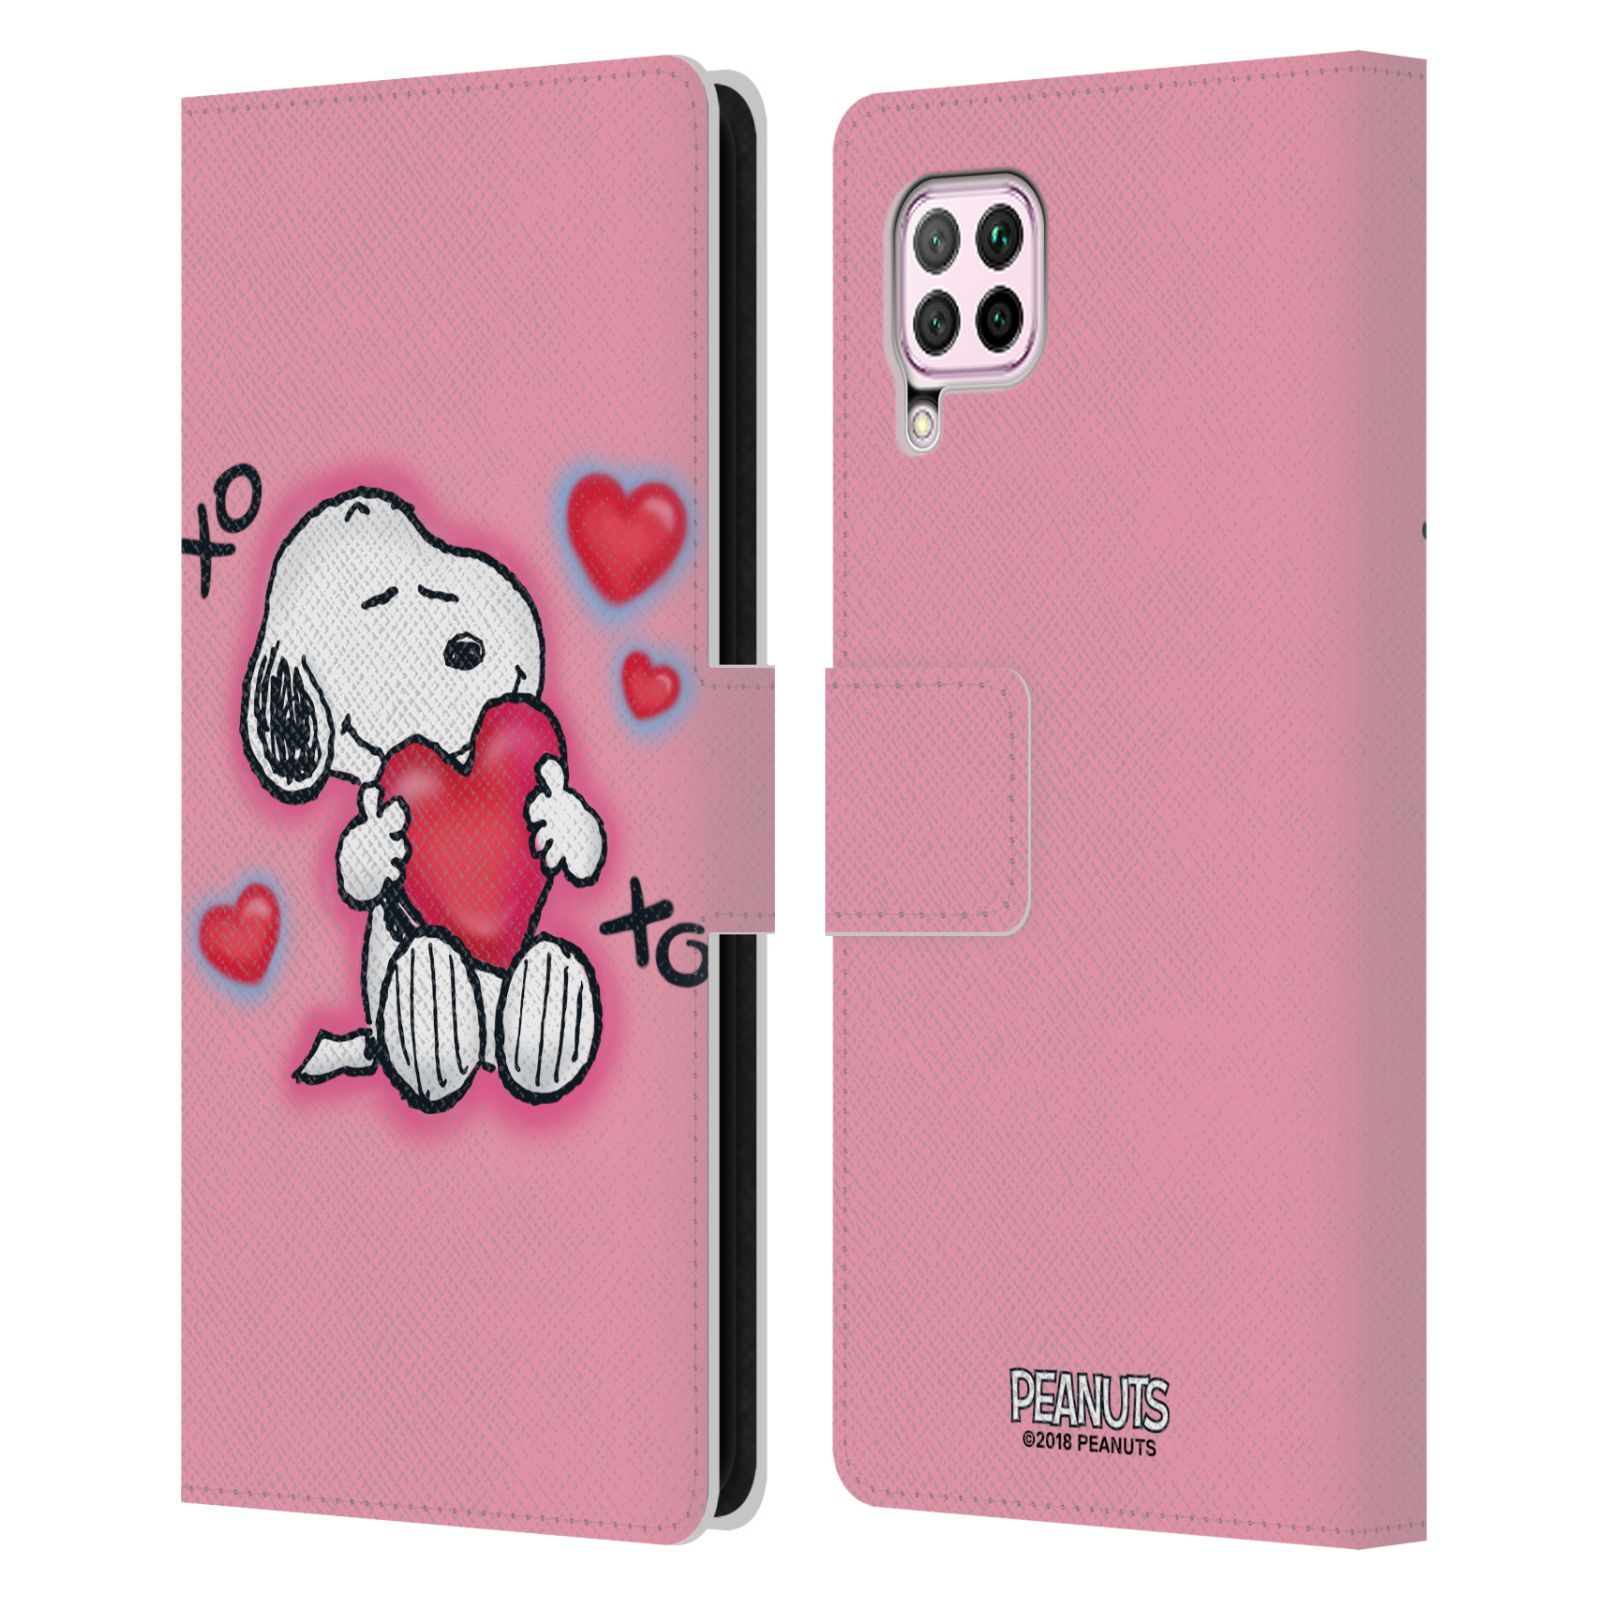 Pouzdro na mobil Huawei P40 LITE - HEAD CASE - Peanuts - Snoopy a srdíčka